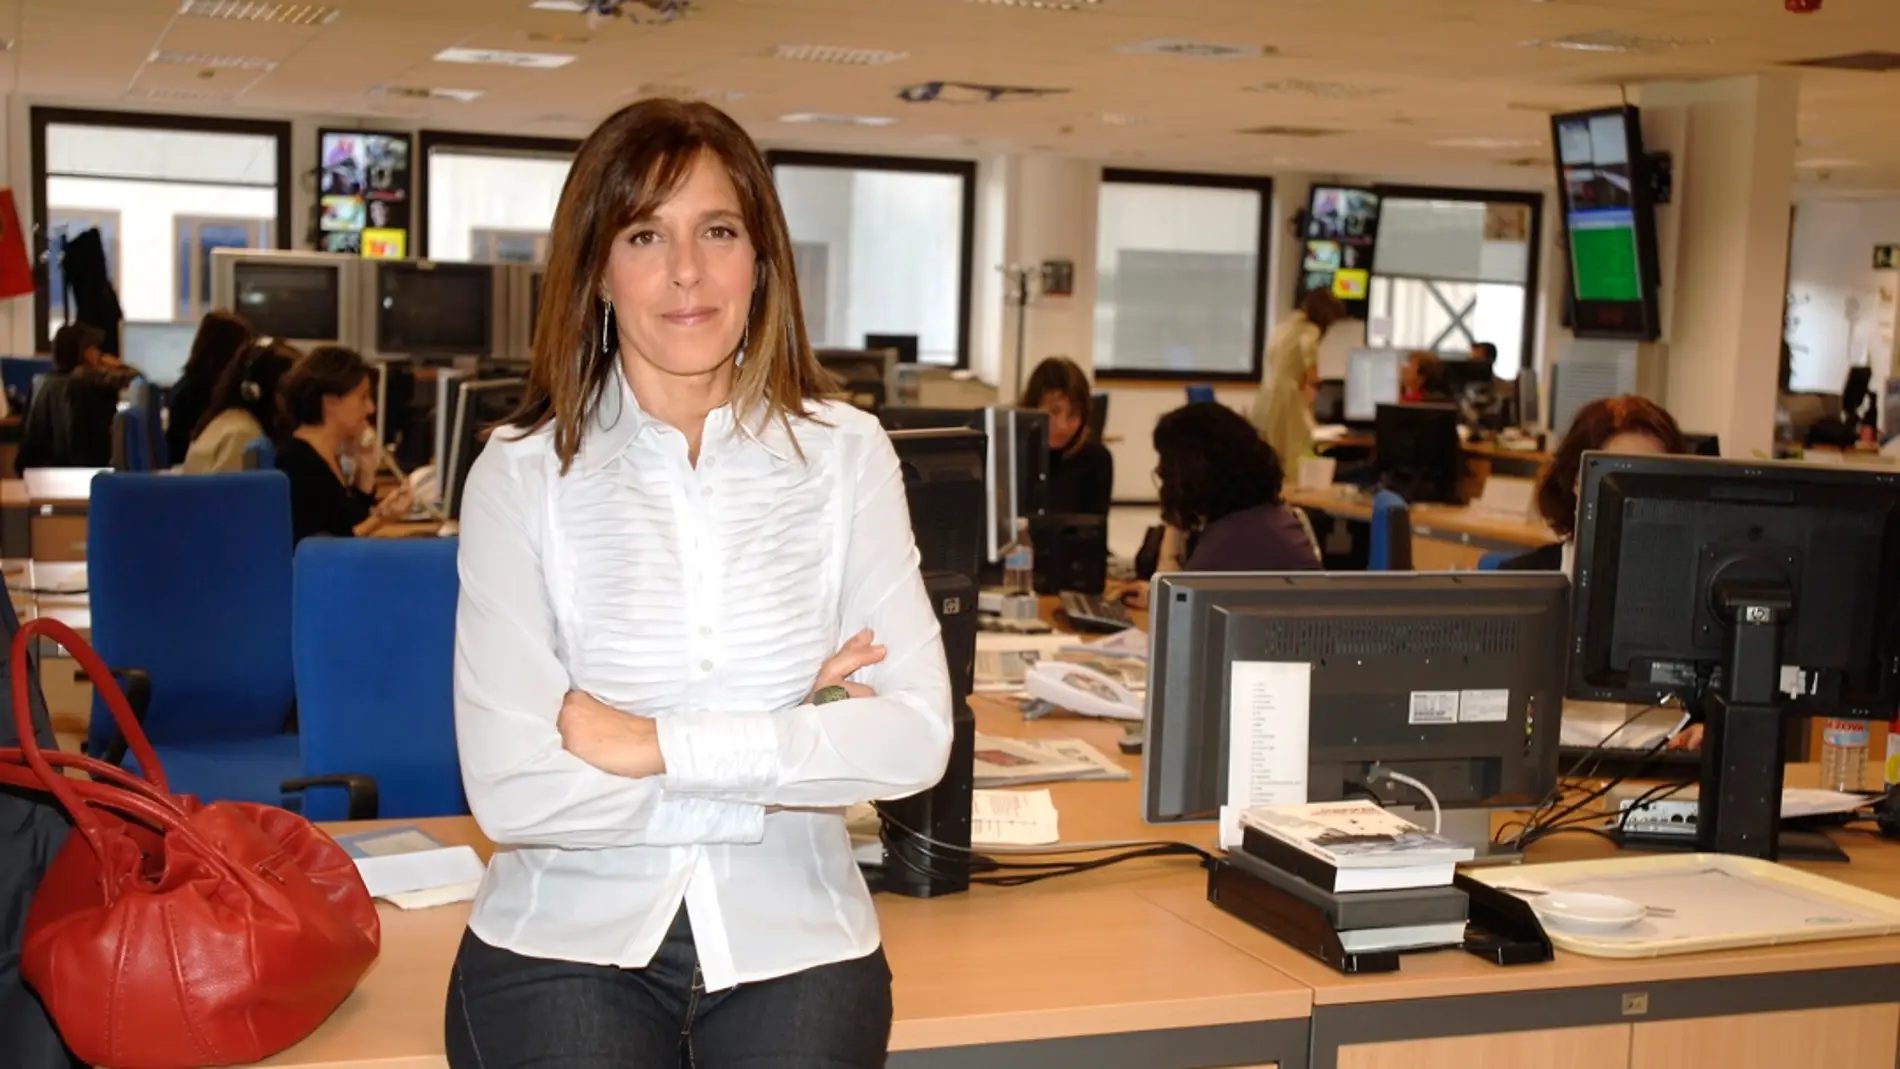 La emotiva despedida de Ana Blanco tras tres décadas en TVE: "Gracias por su confianza"